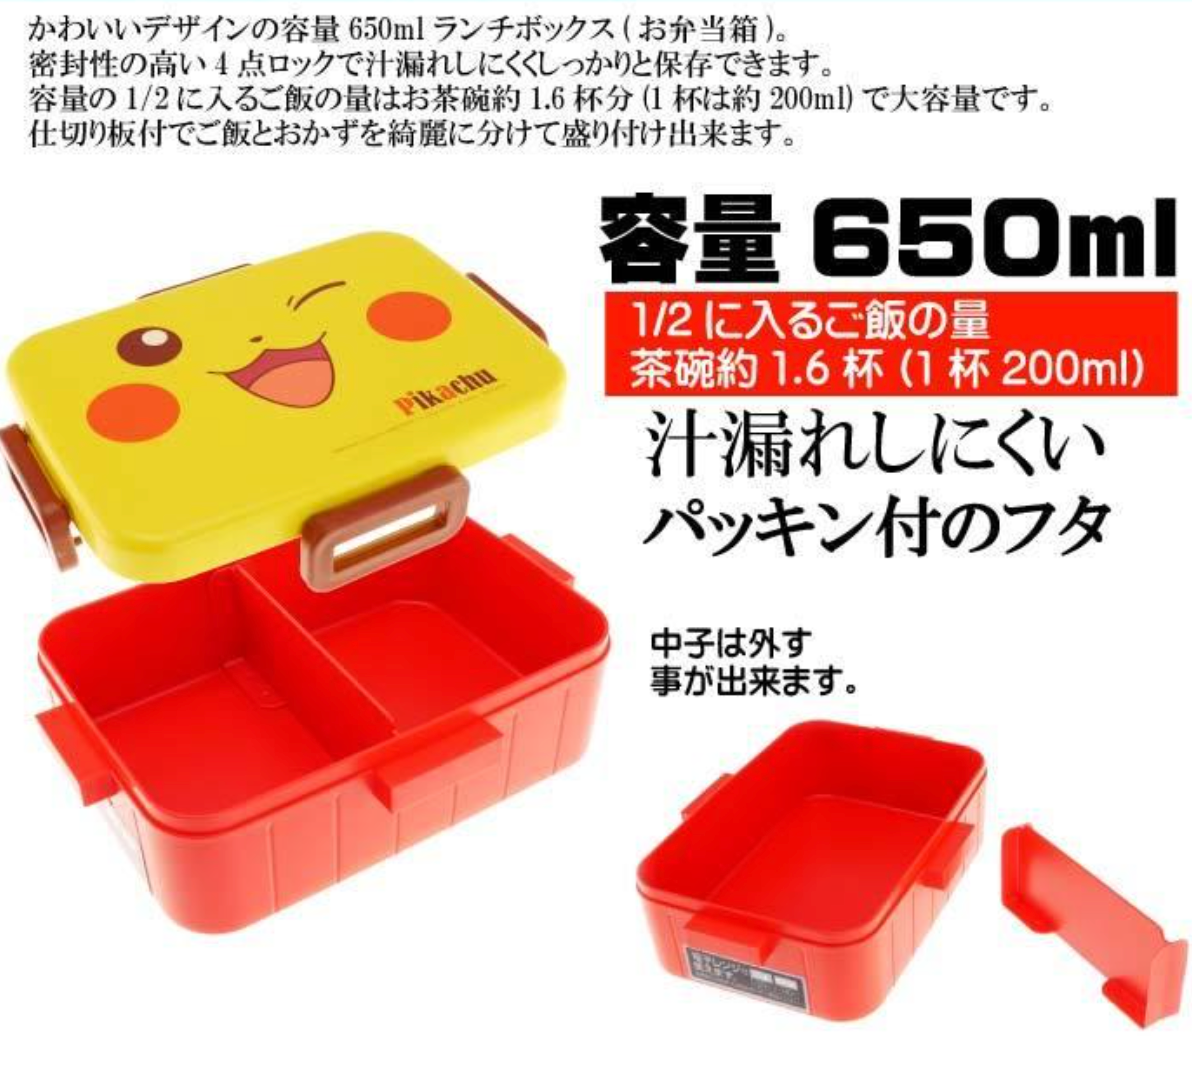 Skater Pokemon Lunch Box 360ml